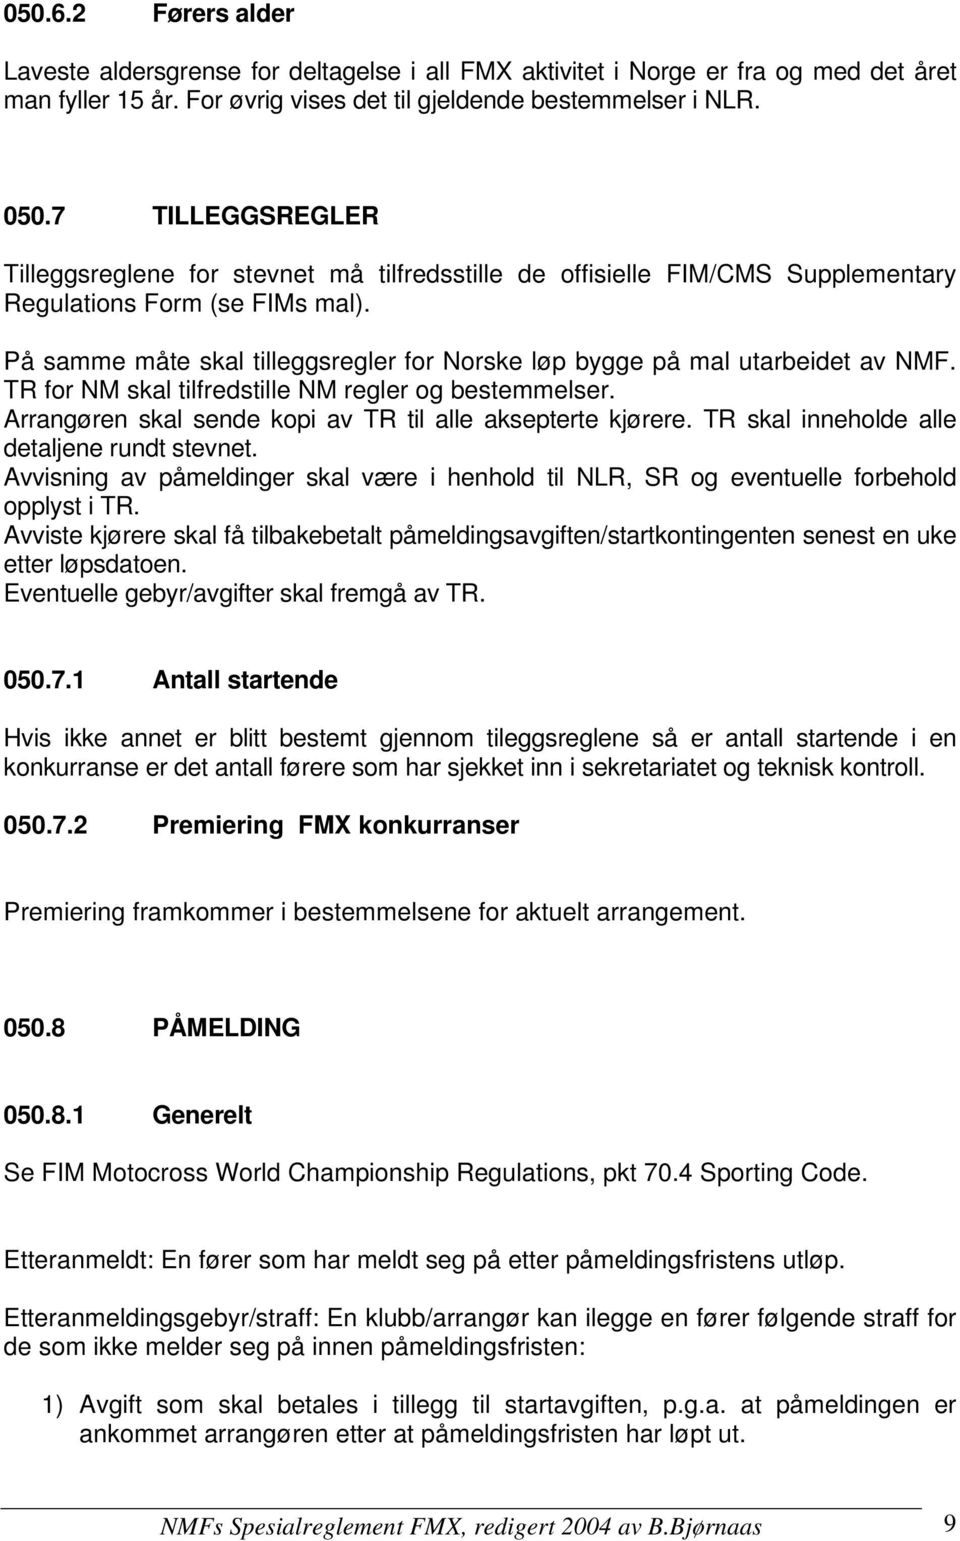 På samme måte skal tilleggsregler for Norske løp bygge på mal utarbeidet av NMF. TR for NM skal tilfredstille NM regler og bestemmelser. Arrangøren skal sende kopi av TR til alle aksepterte kjørere.